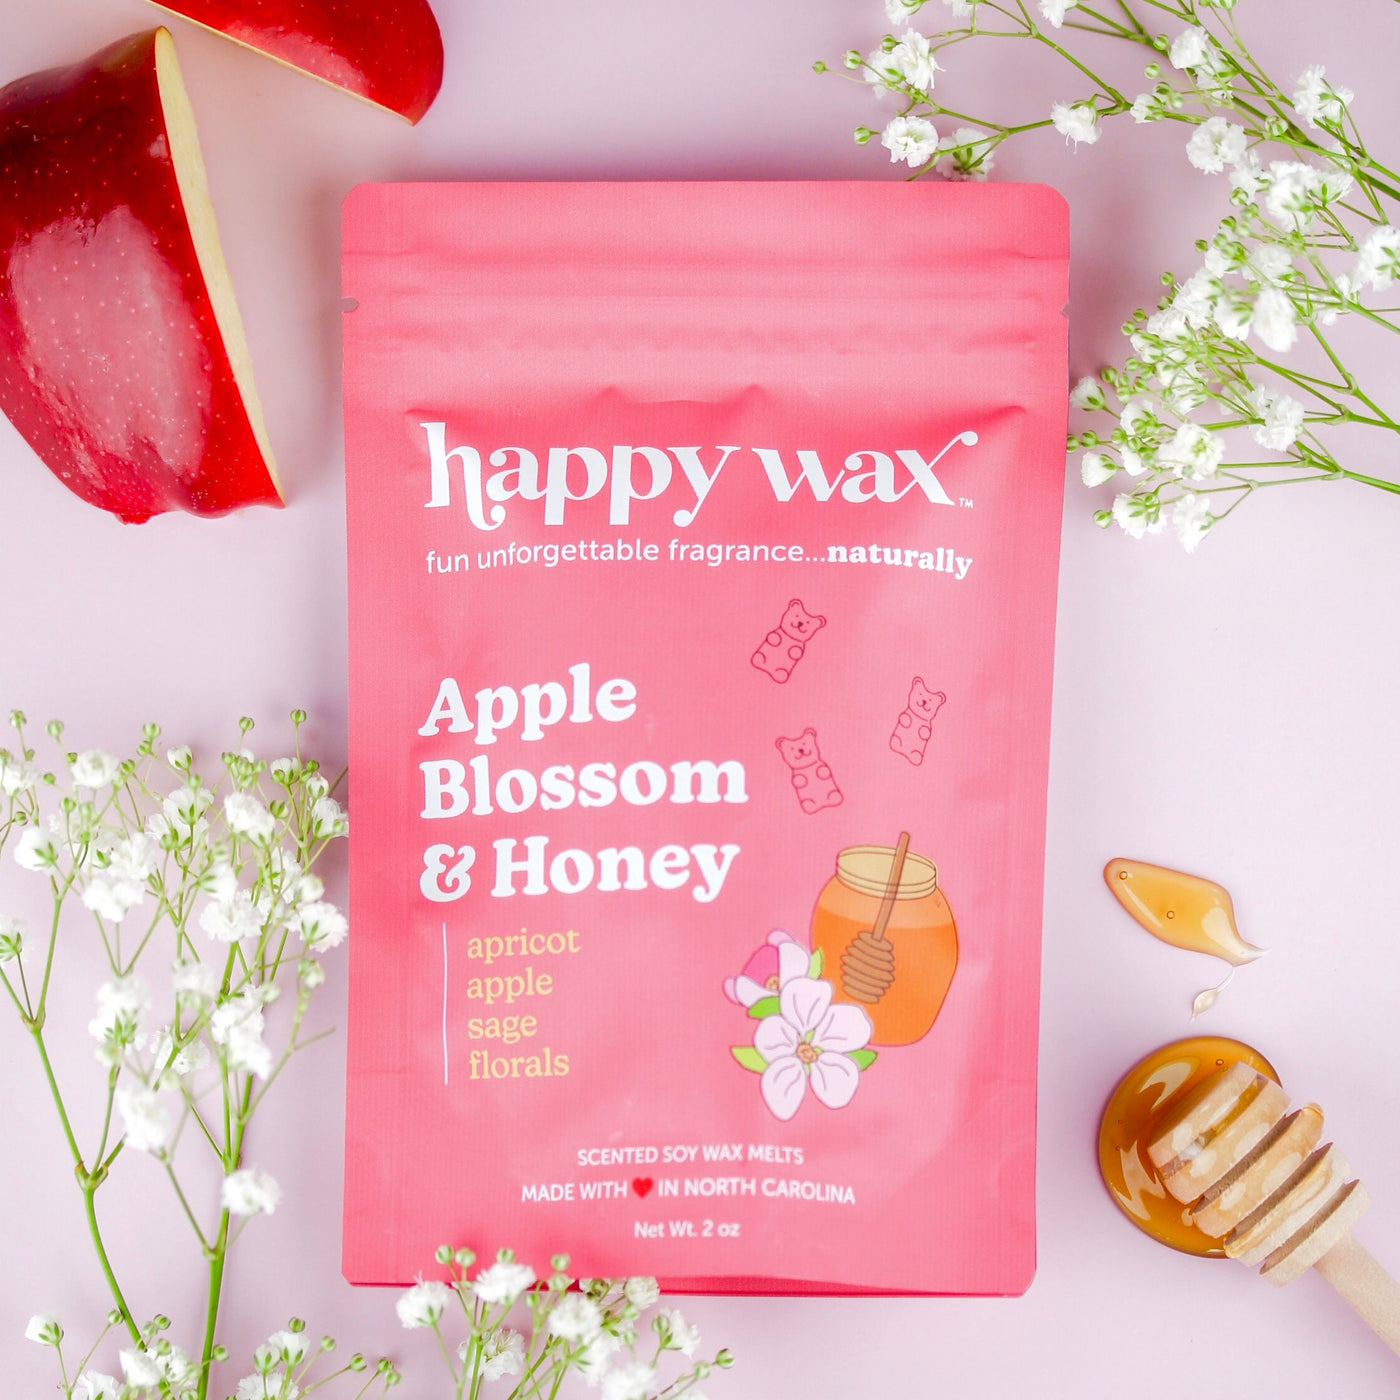 Apple Blossom & Honey Wax Melts